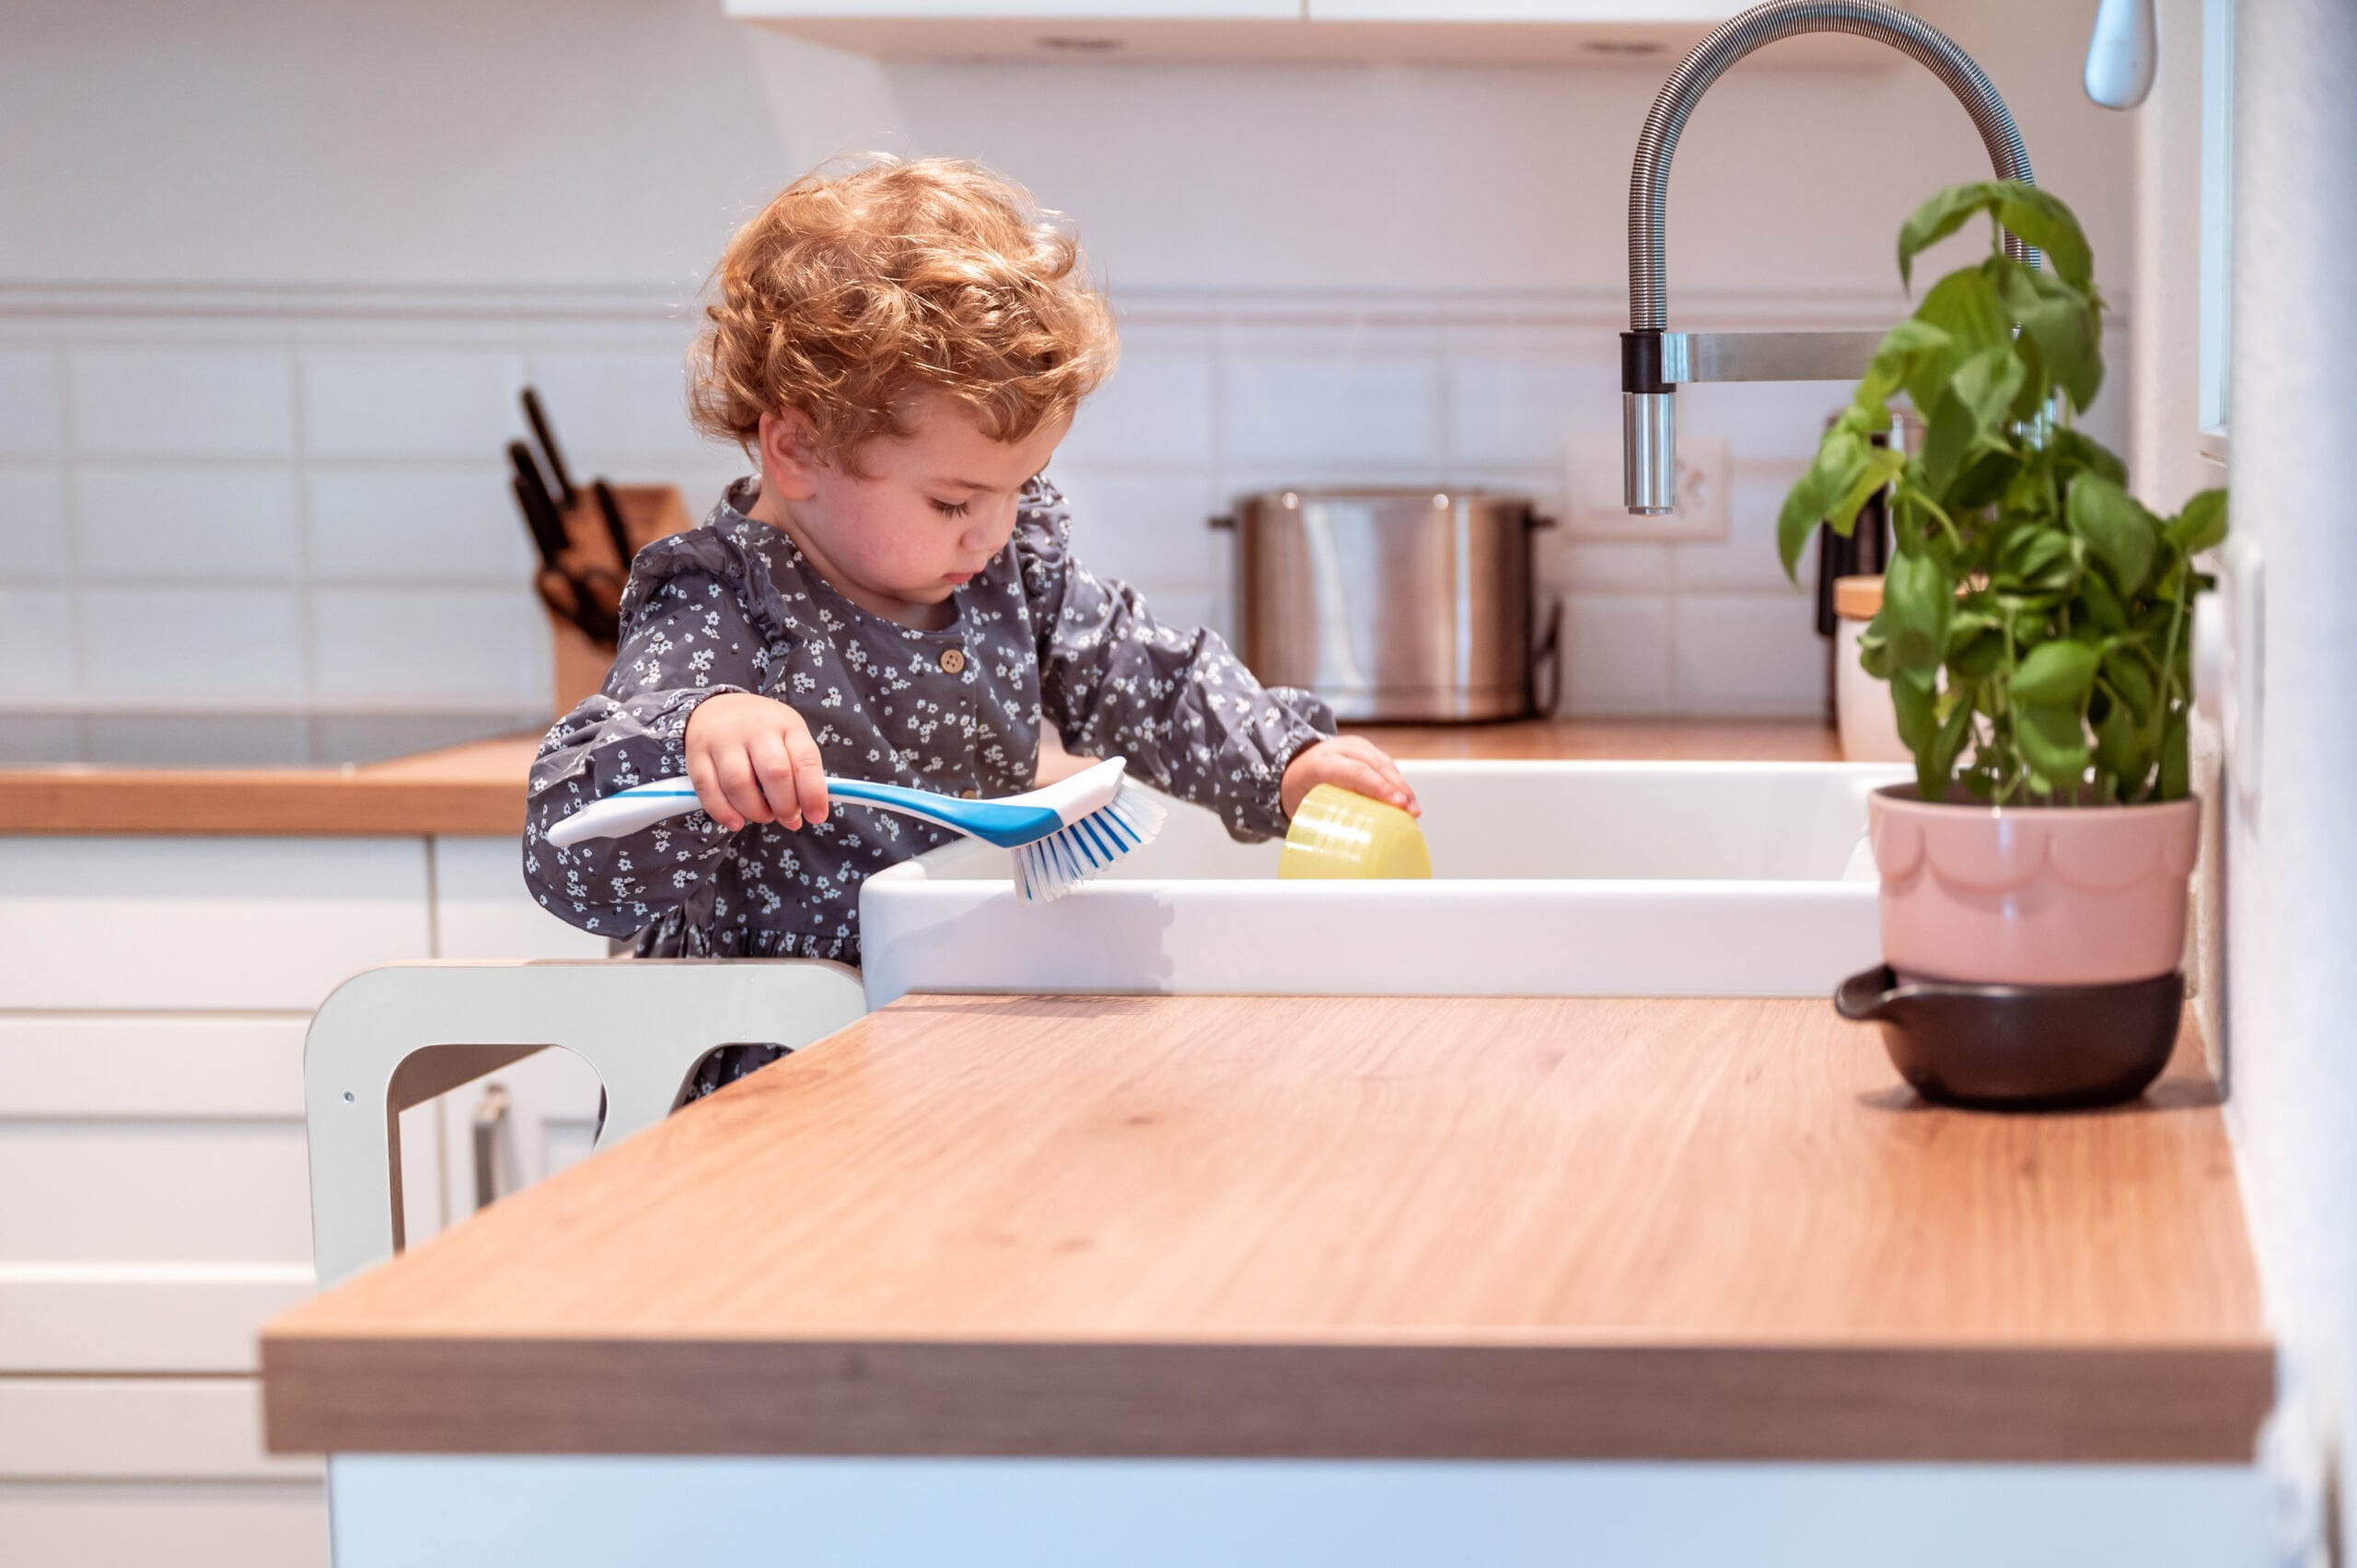 Aide de cuisine Montessori, qui peut être facilement transformé en